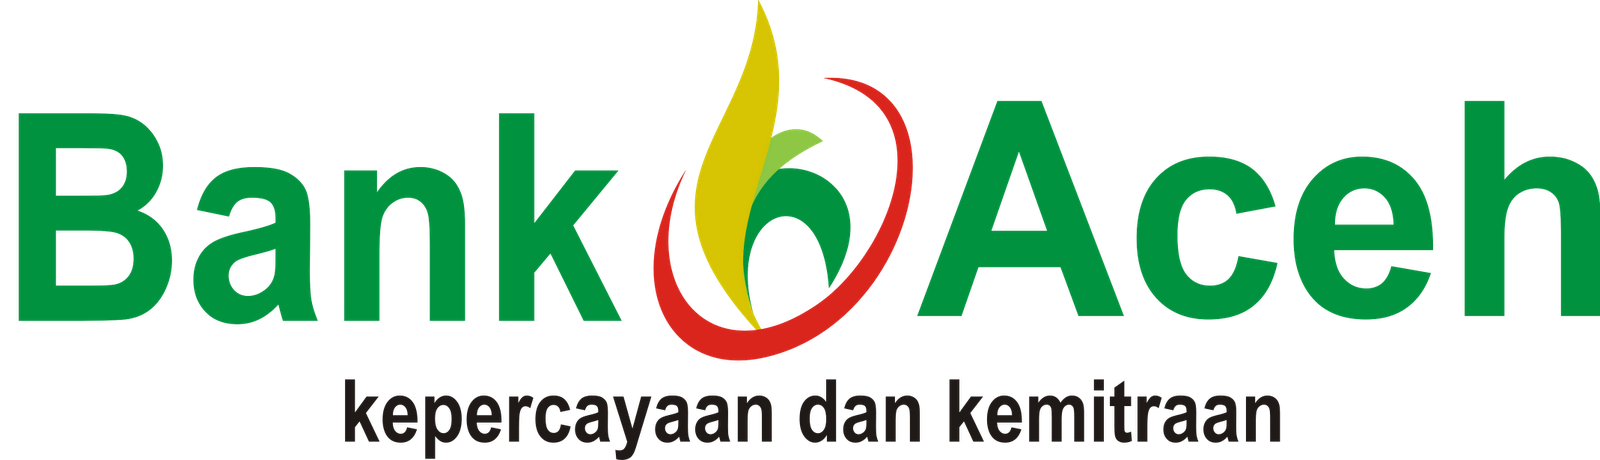  Logo  Bank  Aceh Kumpulan Logo  Lambang Indonesia